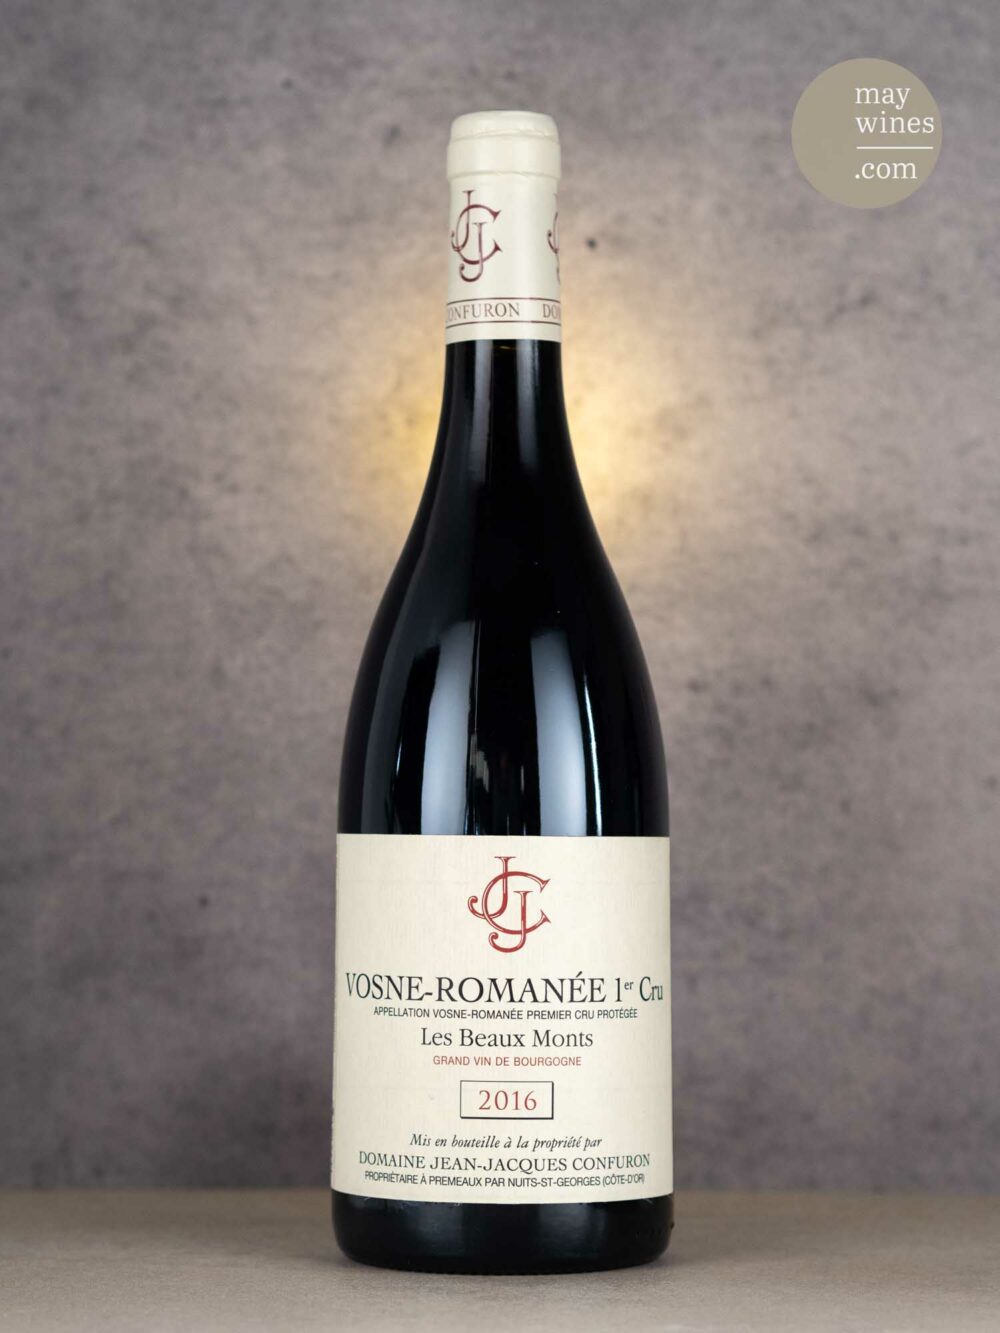 May Wines – Rotwein – 2016 Vosne-Romanée Les Beaux Monts Premier Cru - Domaine Jean Jacques Confuron